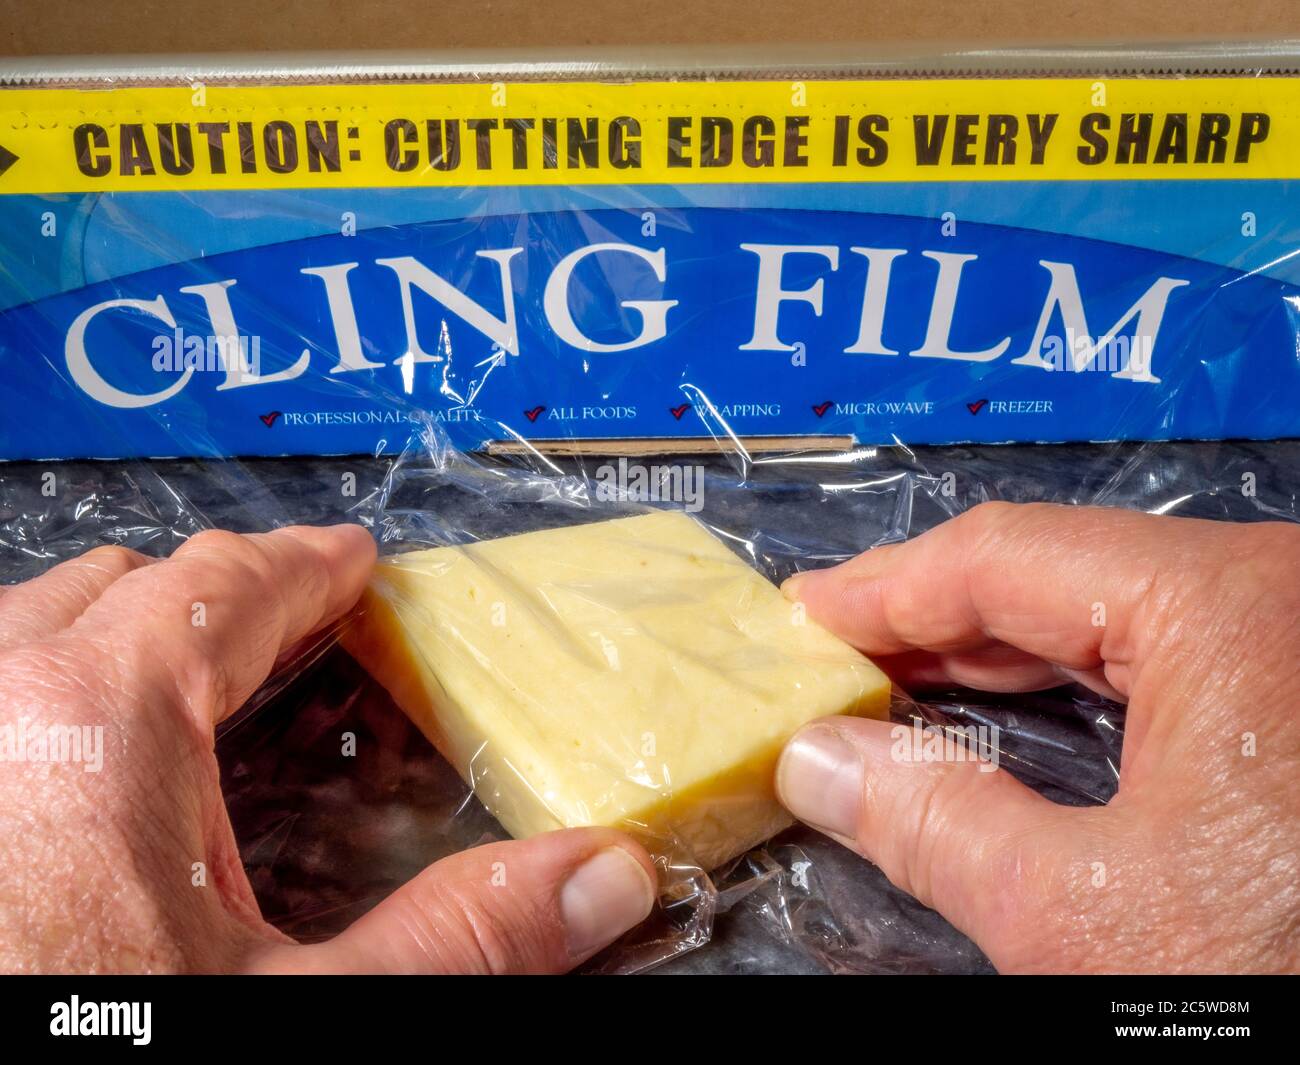 Menschenhände wickeln Frischhaltefolie um ein Stück Käse. Die Abreißrolle dahinter weist darauf hin, dass die gezackte Schneidkante sehr scharf ist. Stockfoto